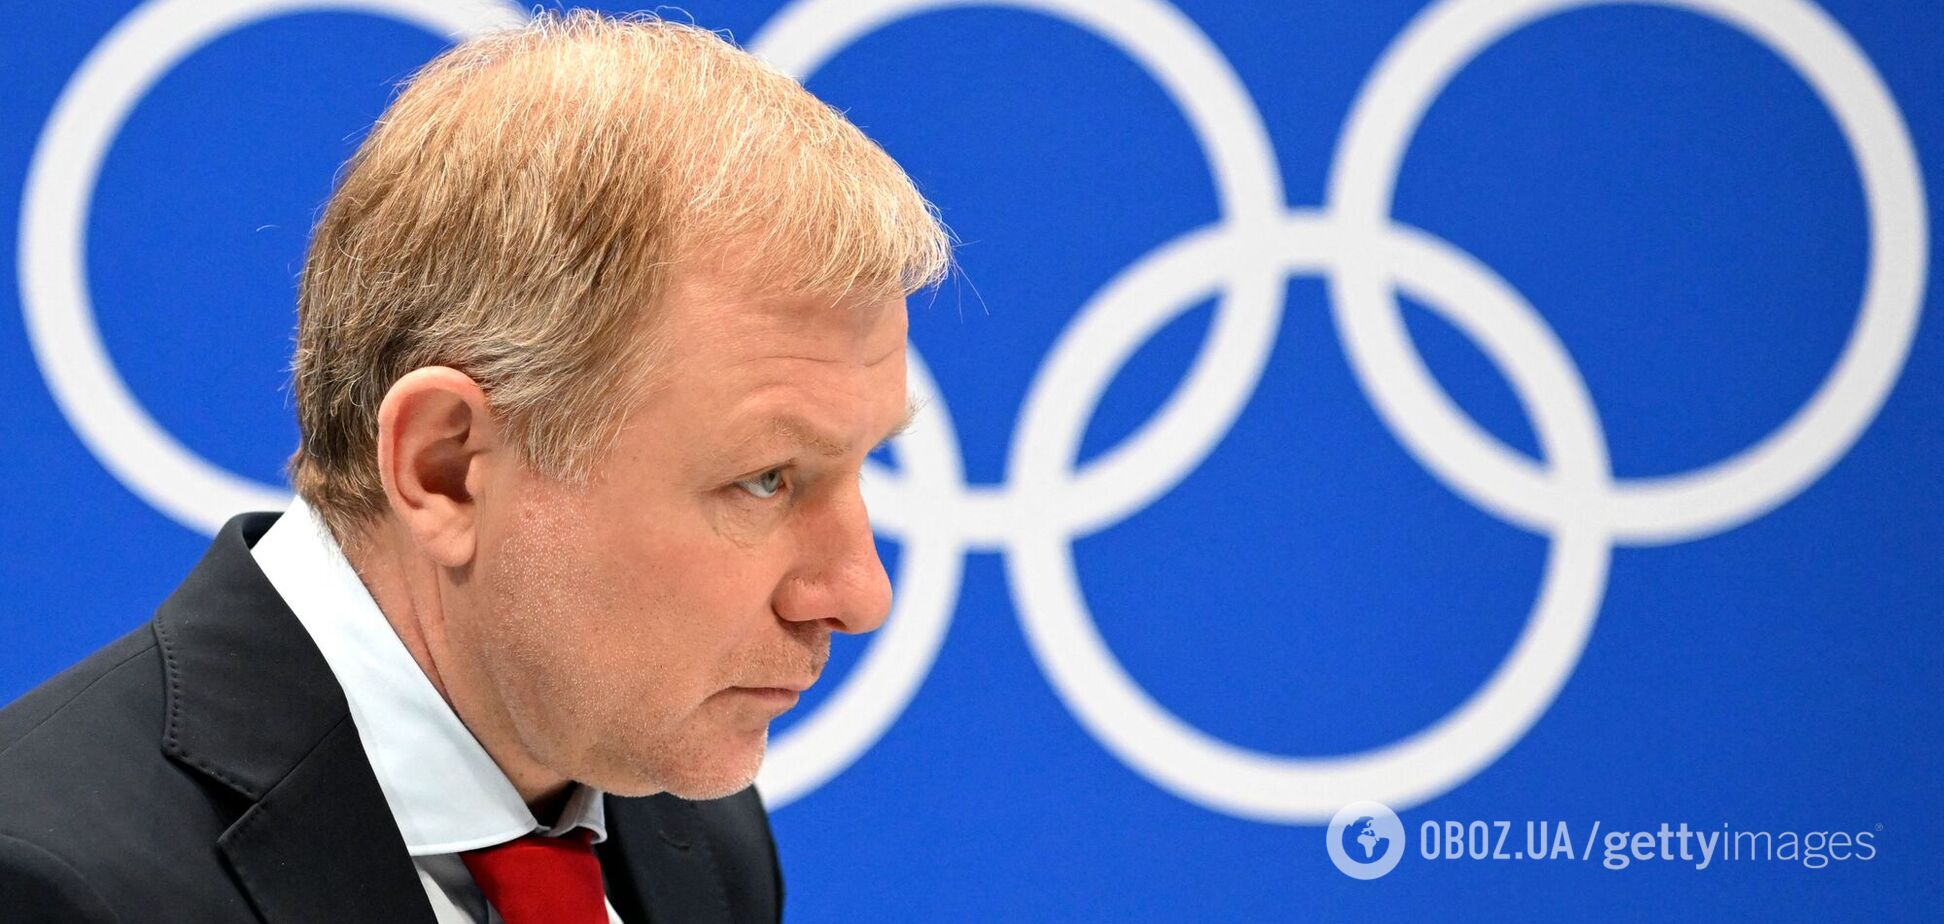 Тренер российских хоккеистов на Олимпиаде пожаловался на своих журналистов